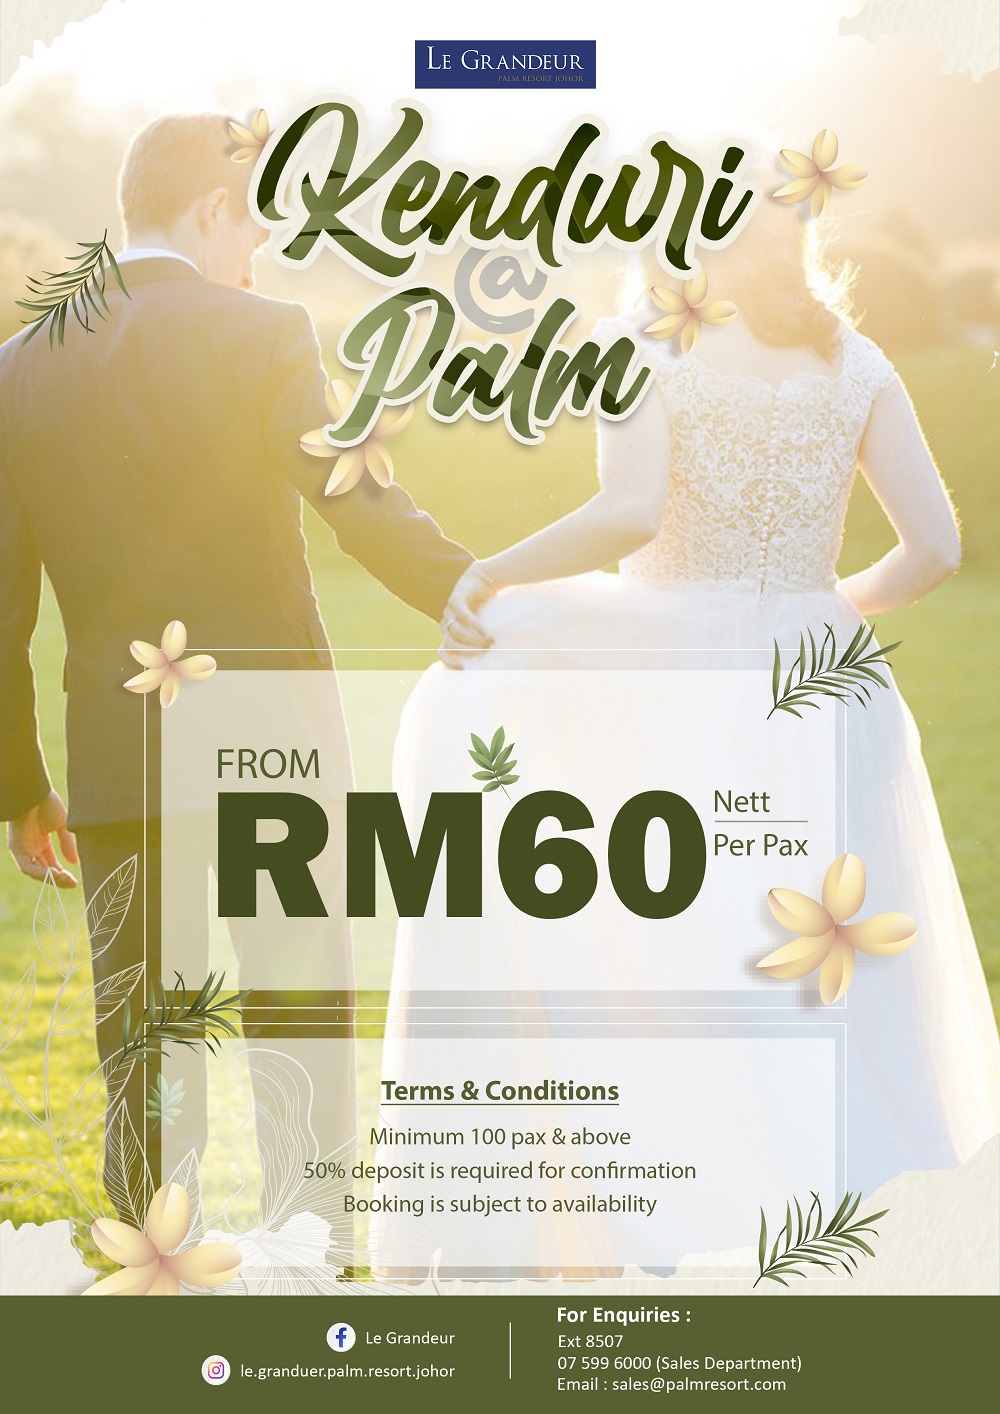 Kenduri @ Palm Wedding Package